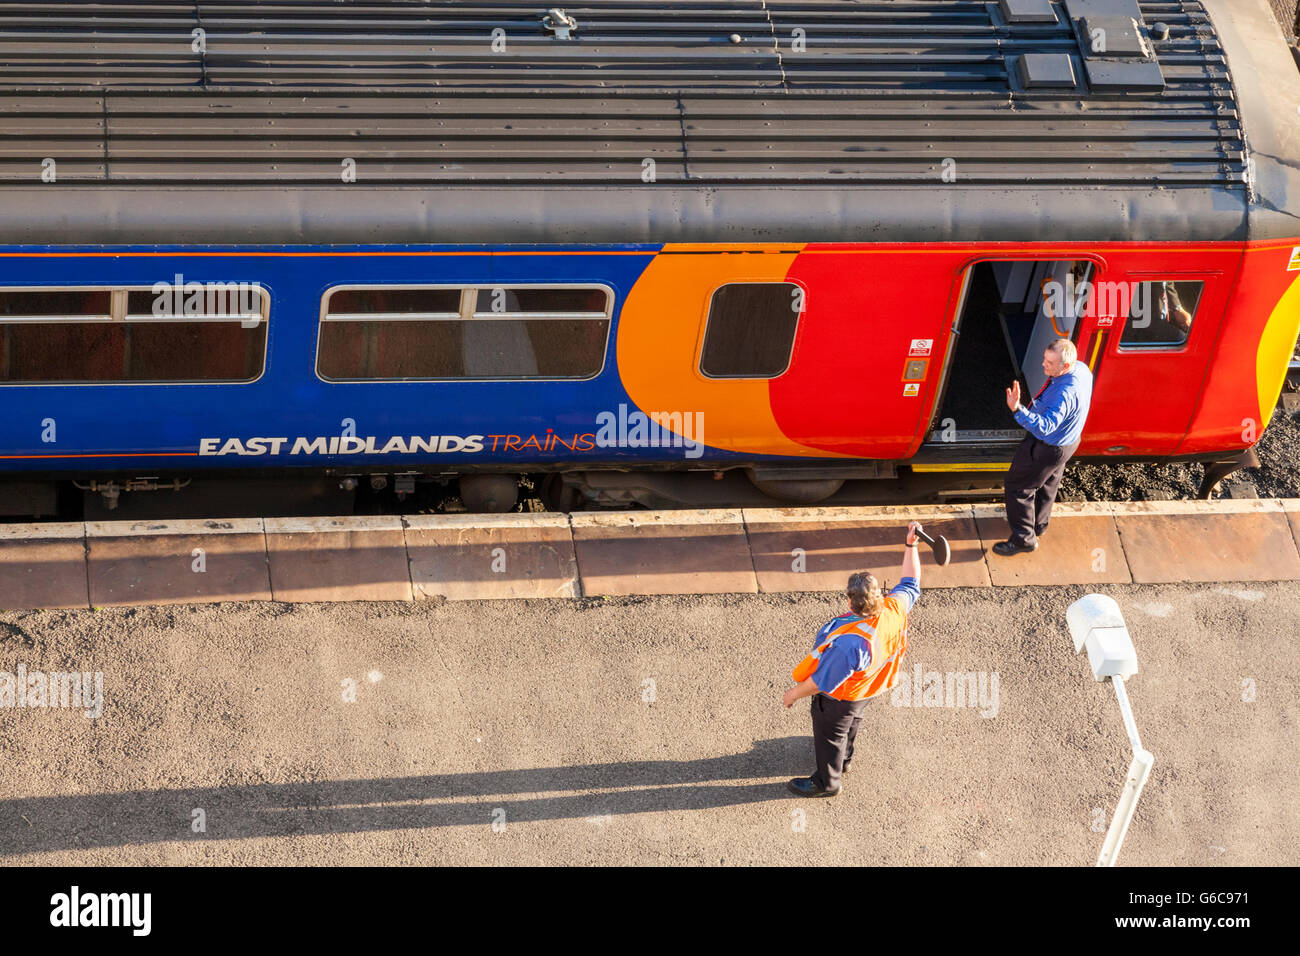 East Midlands treni treno pronto a lasciare. Treno in partenza da una piattaforma presso la stazione di Nottingham, Nottingham, Inghilterra, Regno Unito Foto Stock